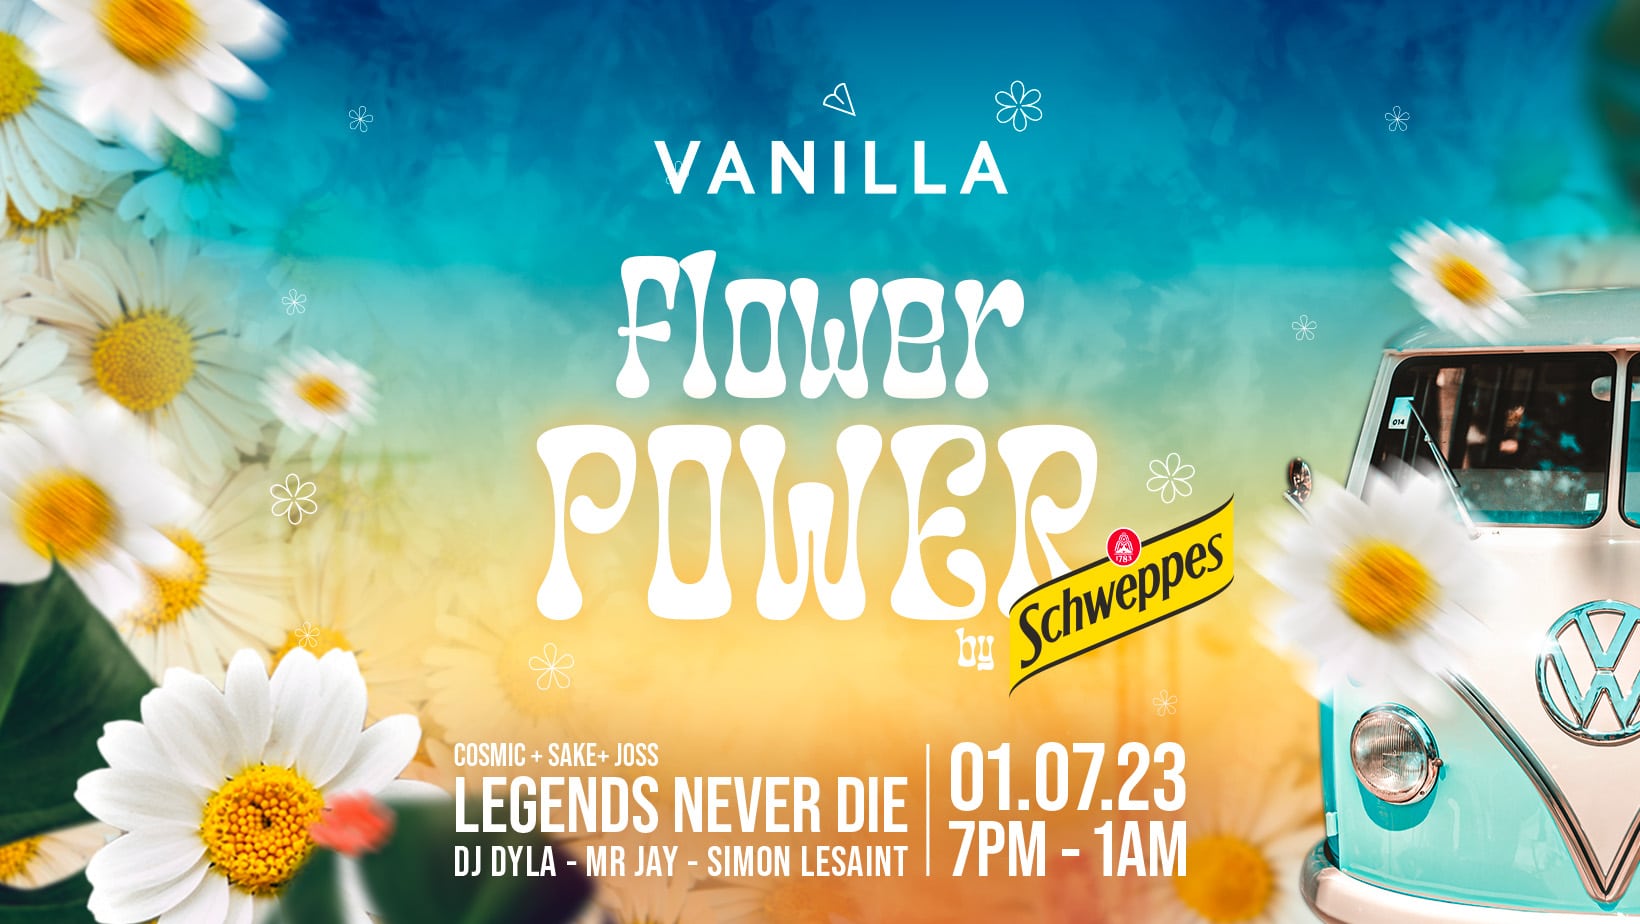 vanilla-event-samedi-flower-power-schweppes